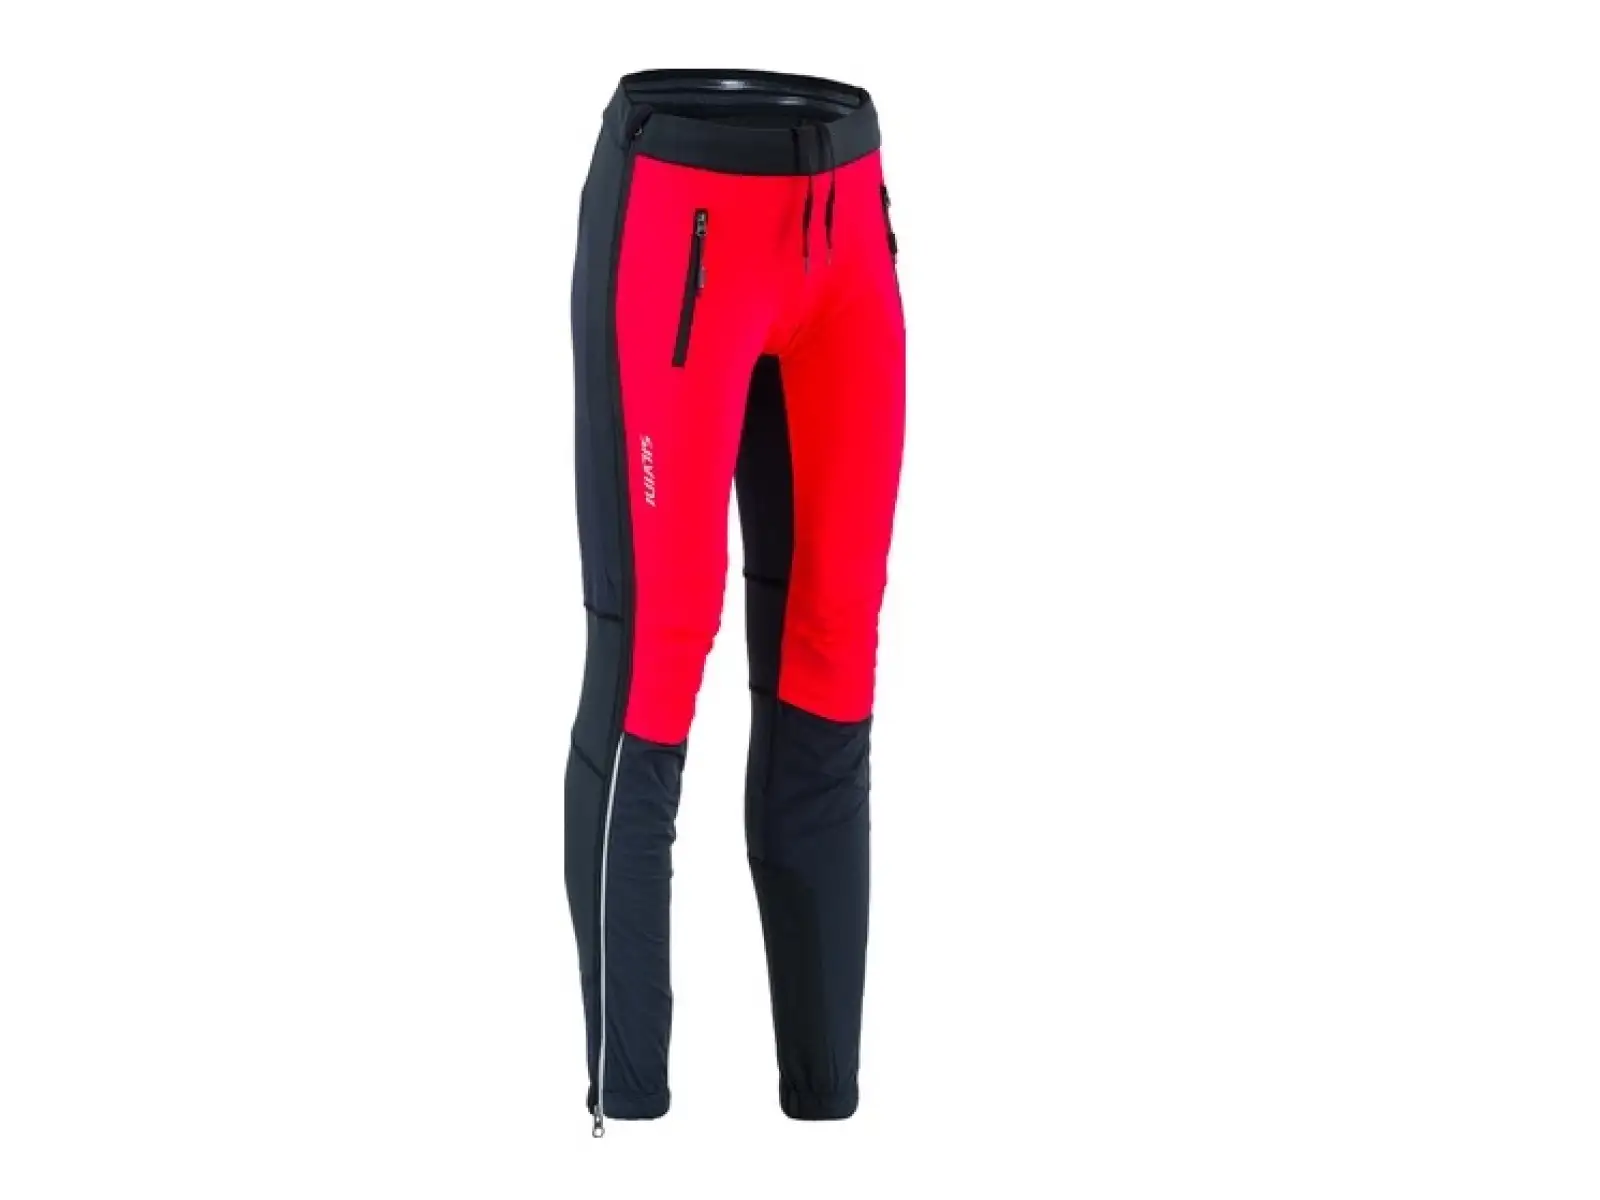 Silvini Soracte Pro WP1744 dámské kalhoty black/red